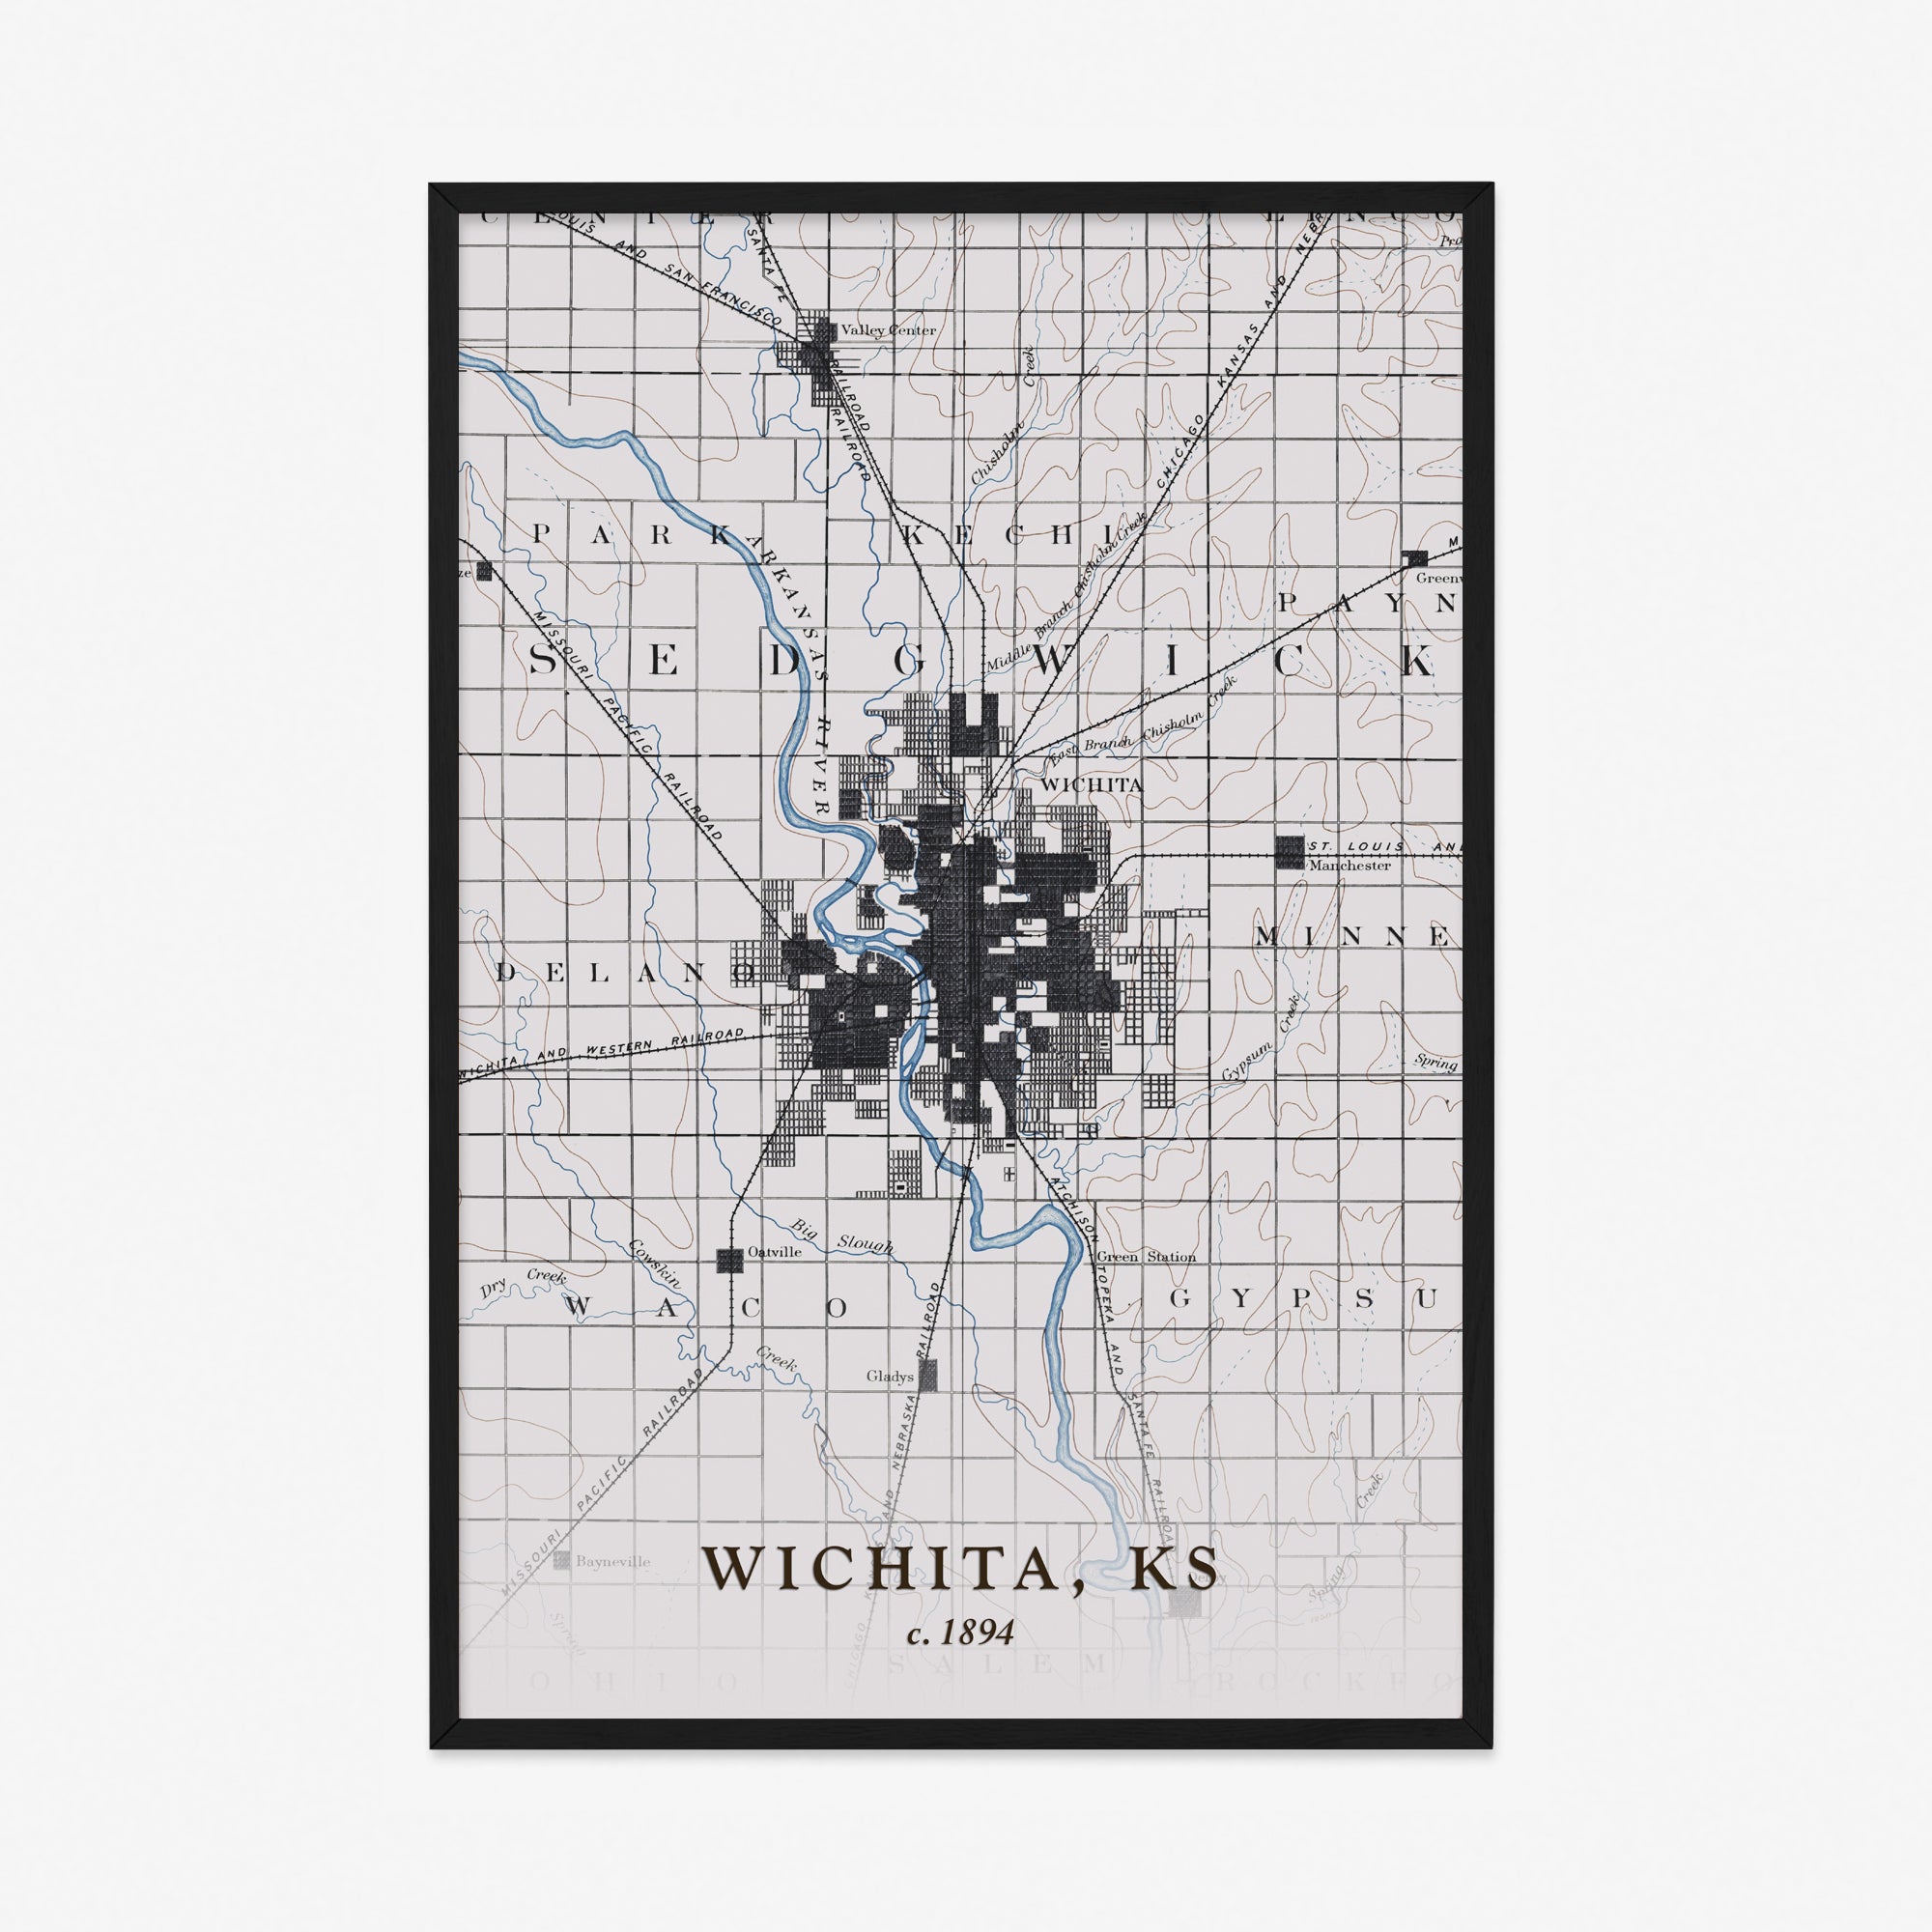 Wichita, KS - 1894 Topographic Map